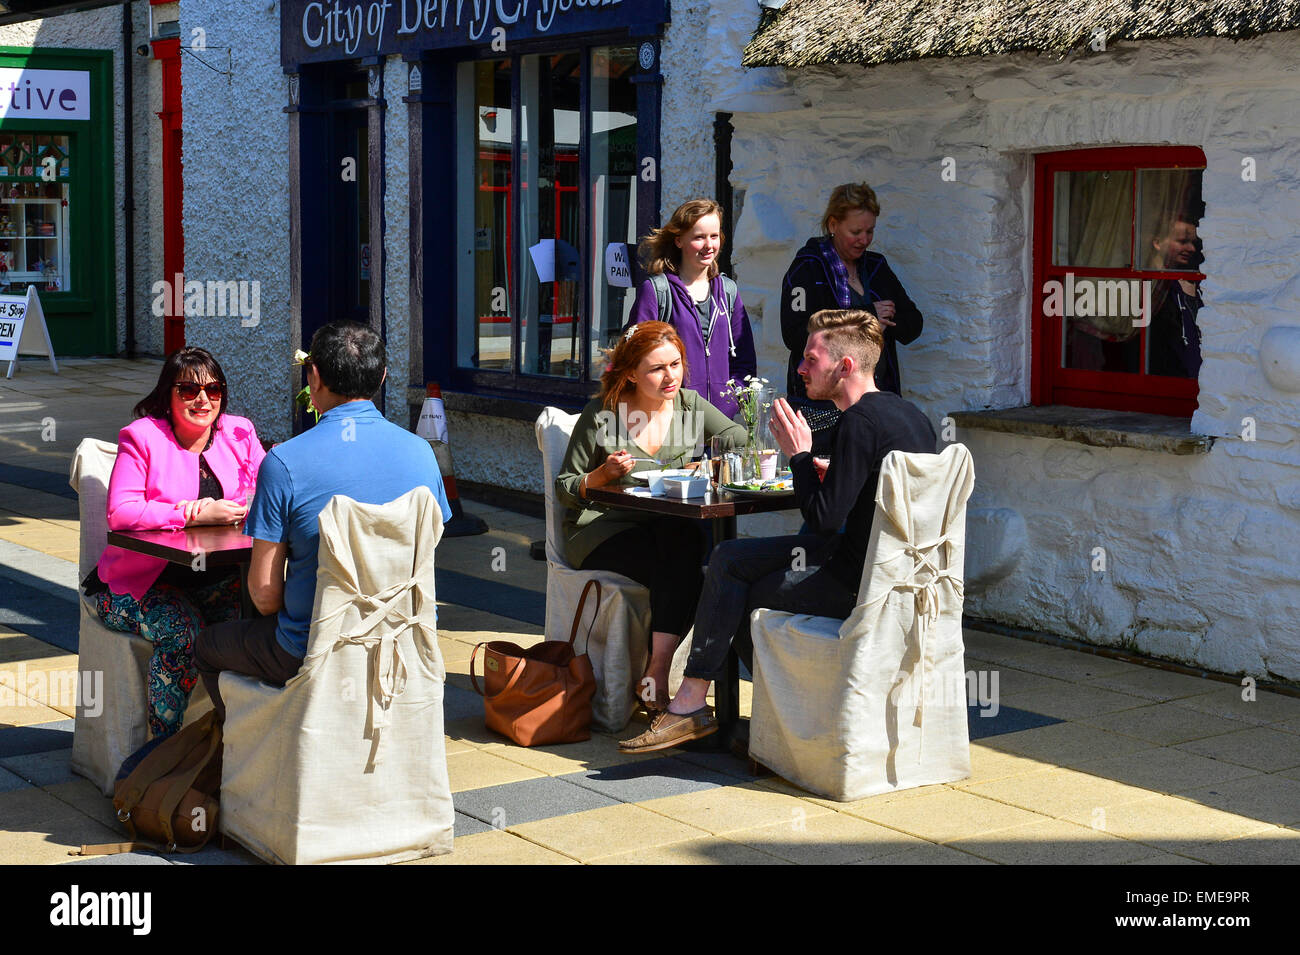 Les gens de manger en plein air dans le village d'Artisanat, Londonderry (Derry), l'Irlande du Nord Banque D'Images